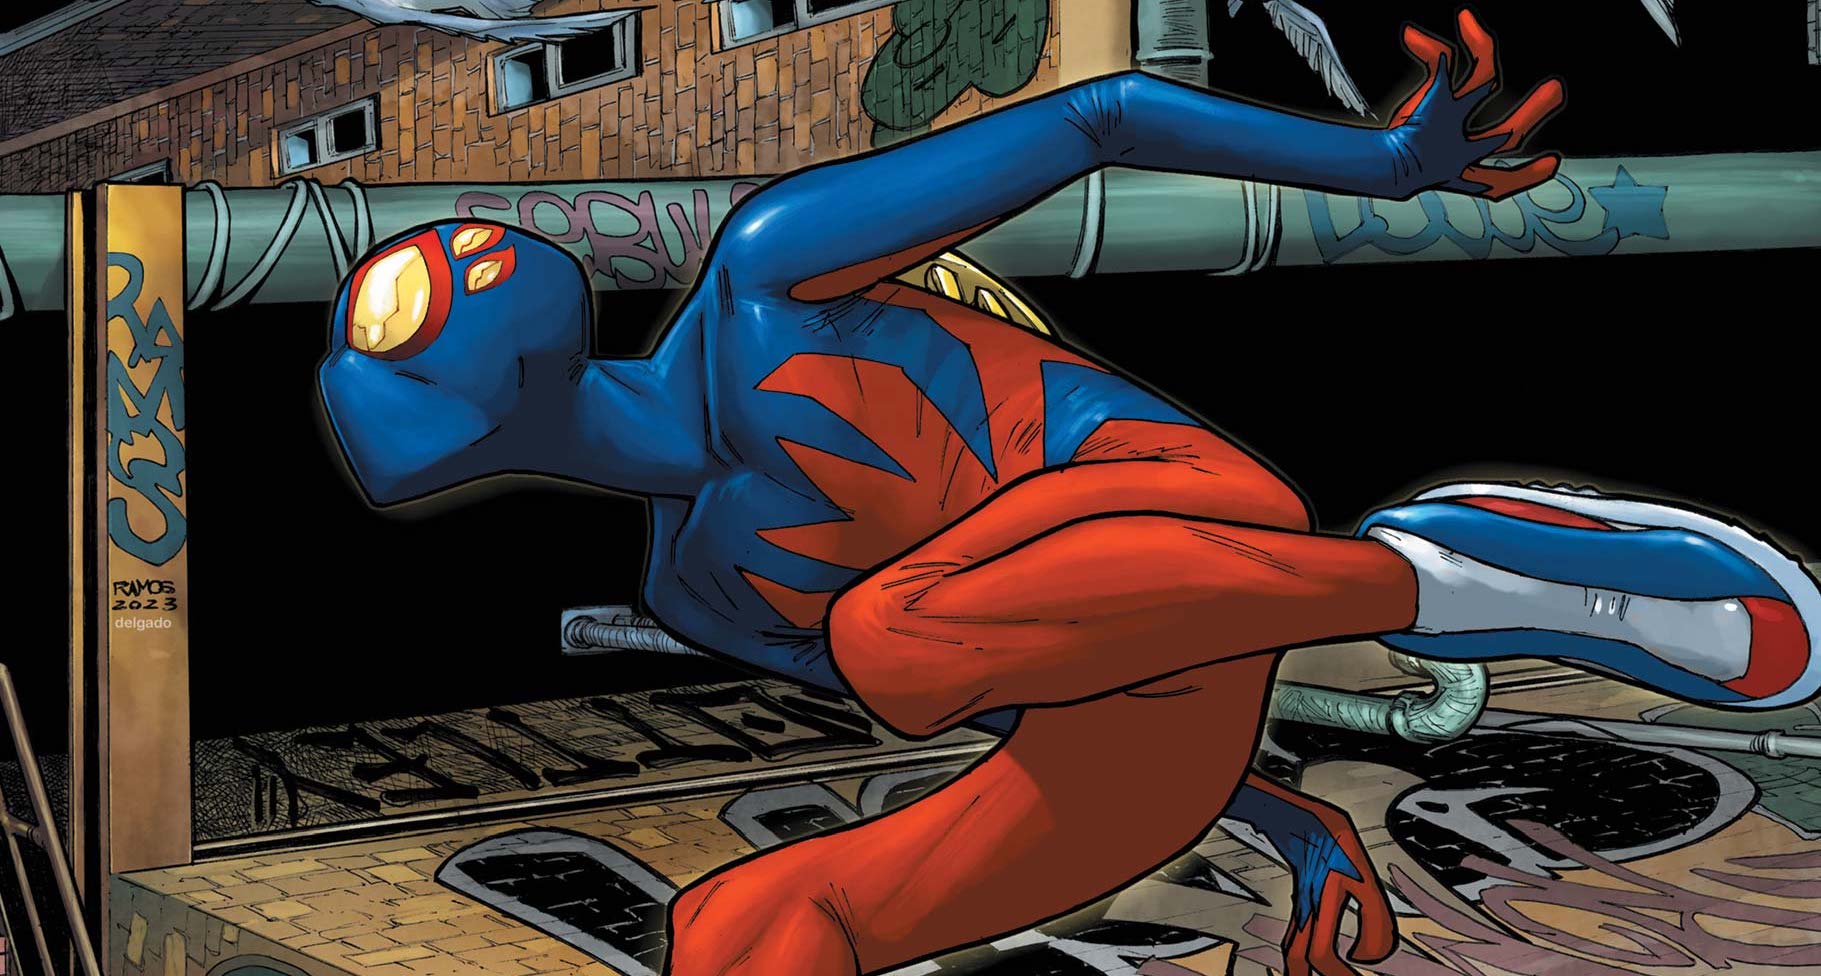 Marvel Comics reveals new Dan Slott character Spider-Boy